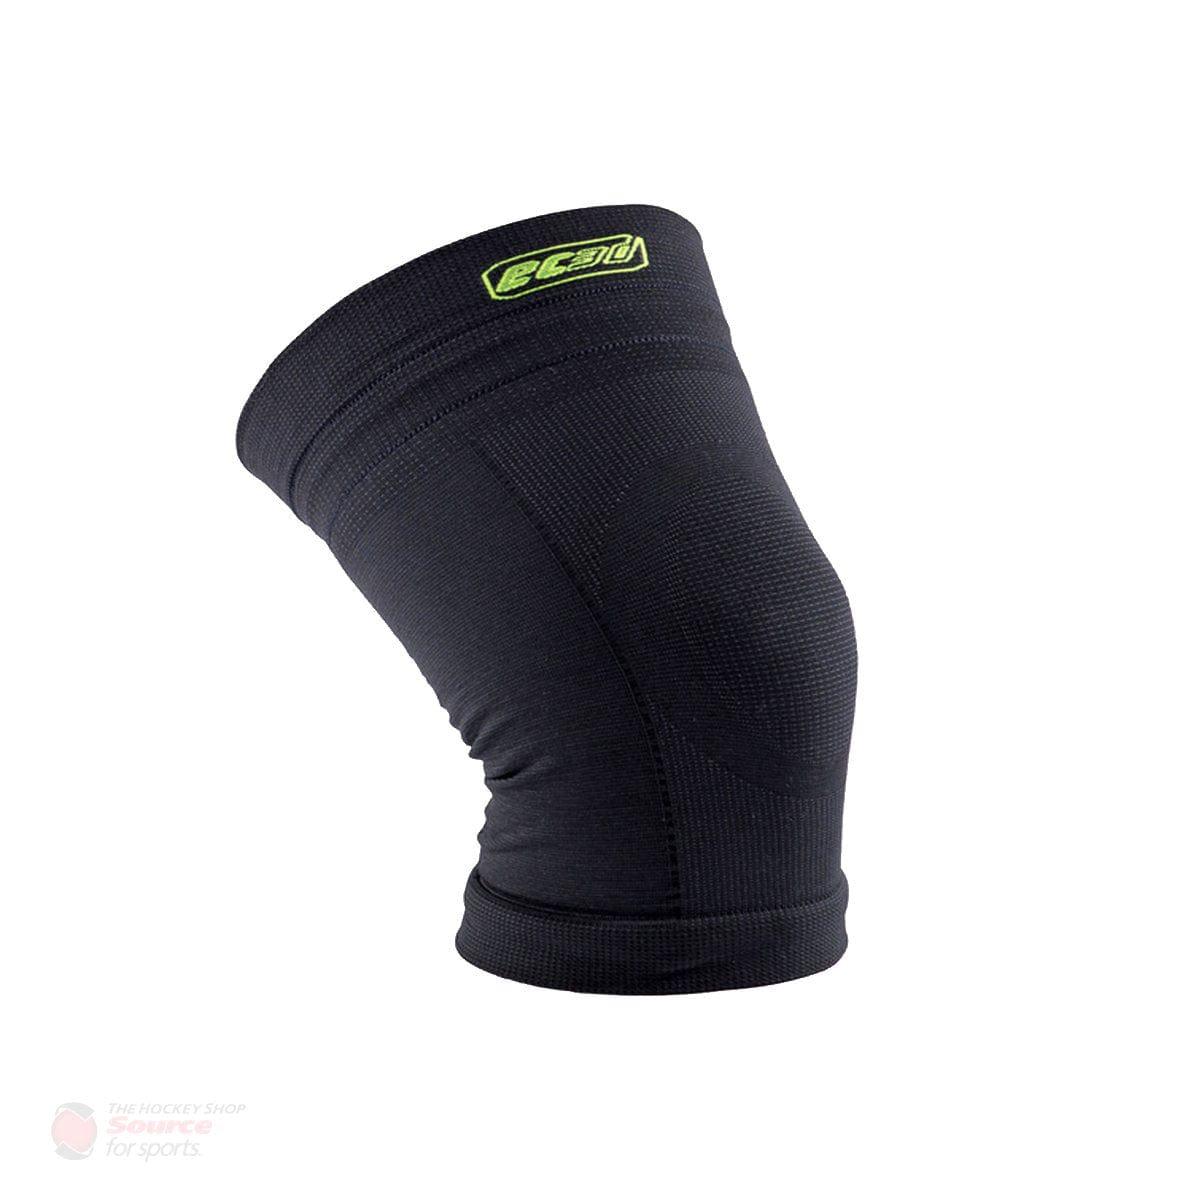 EC3D SportsMed Compression Knee Support Brace